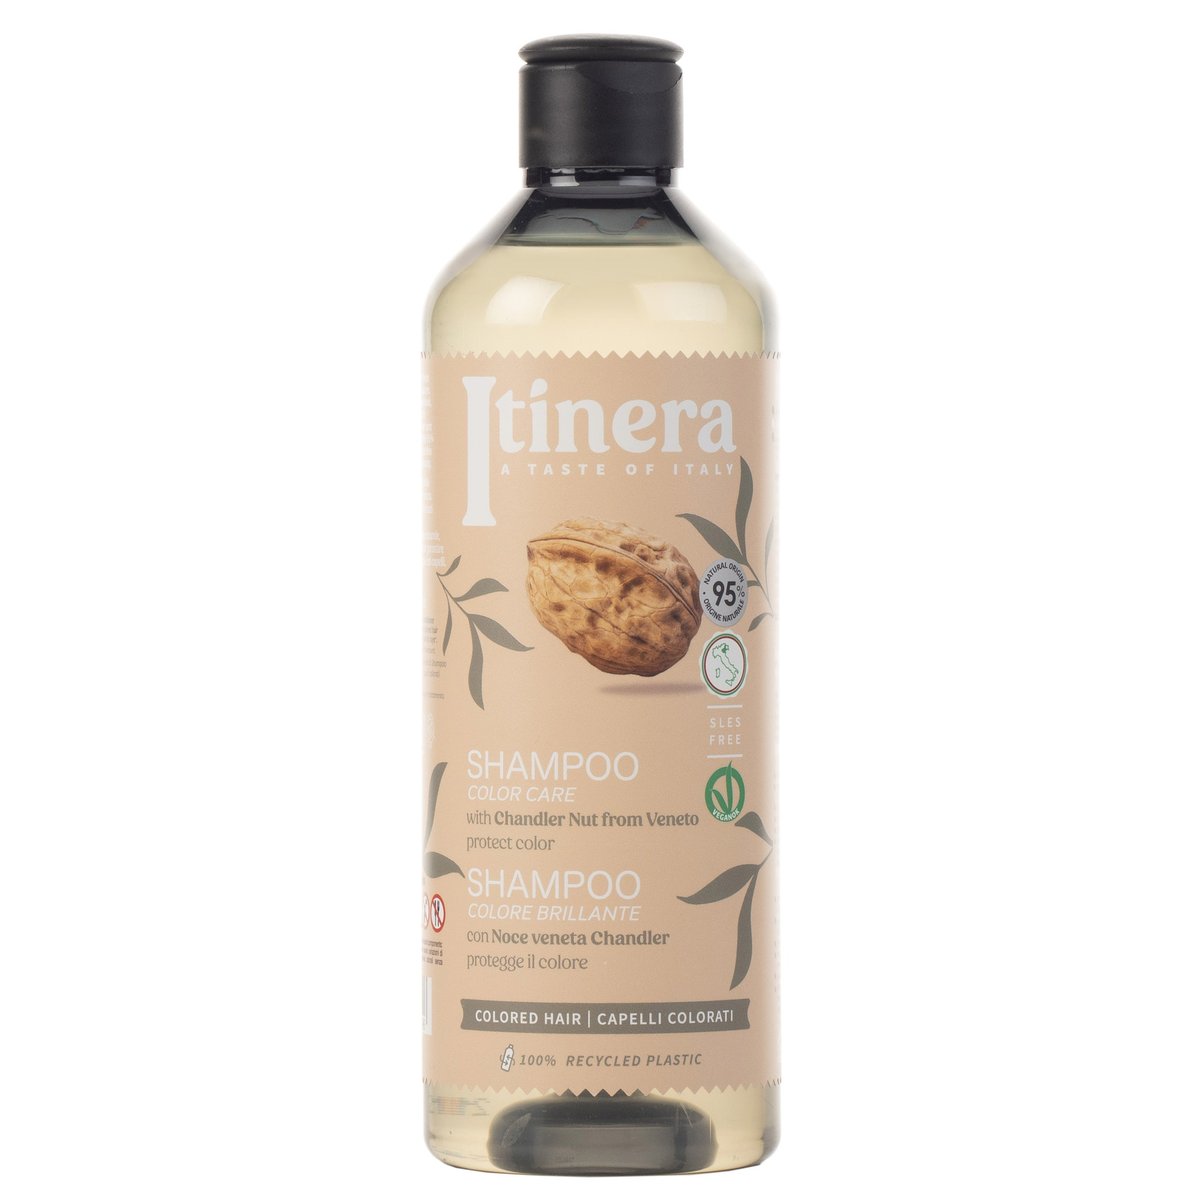 Itinera, Szampon do włosów farbowanych z orzechami chandler z Veneto, 95% składników naturalnych, 370 ml